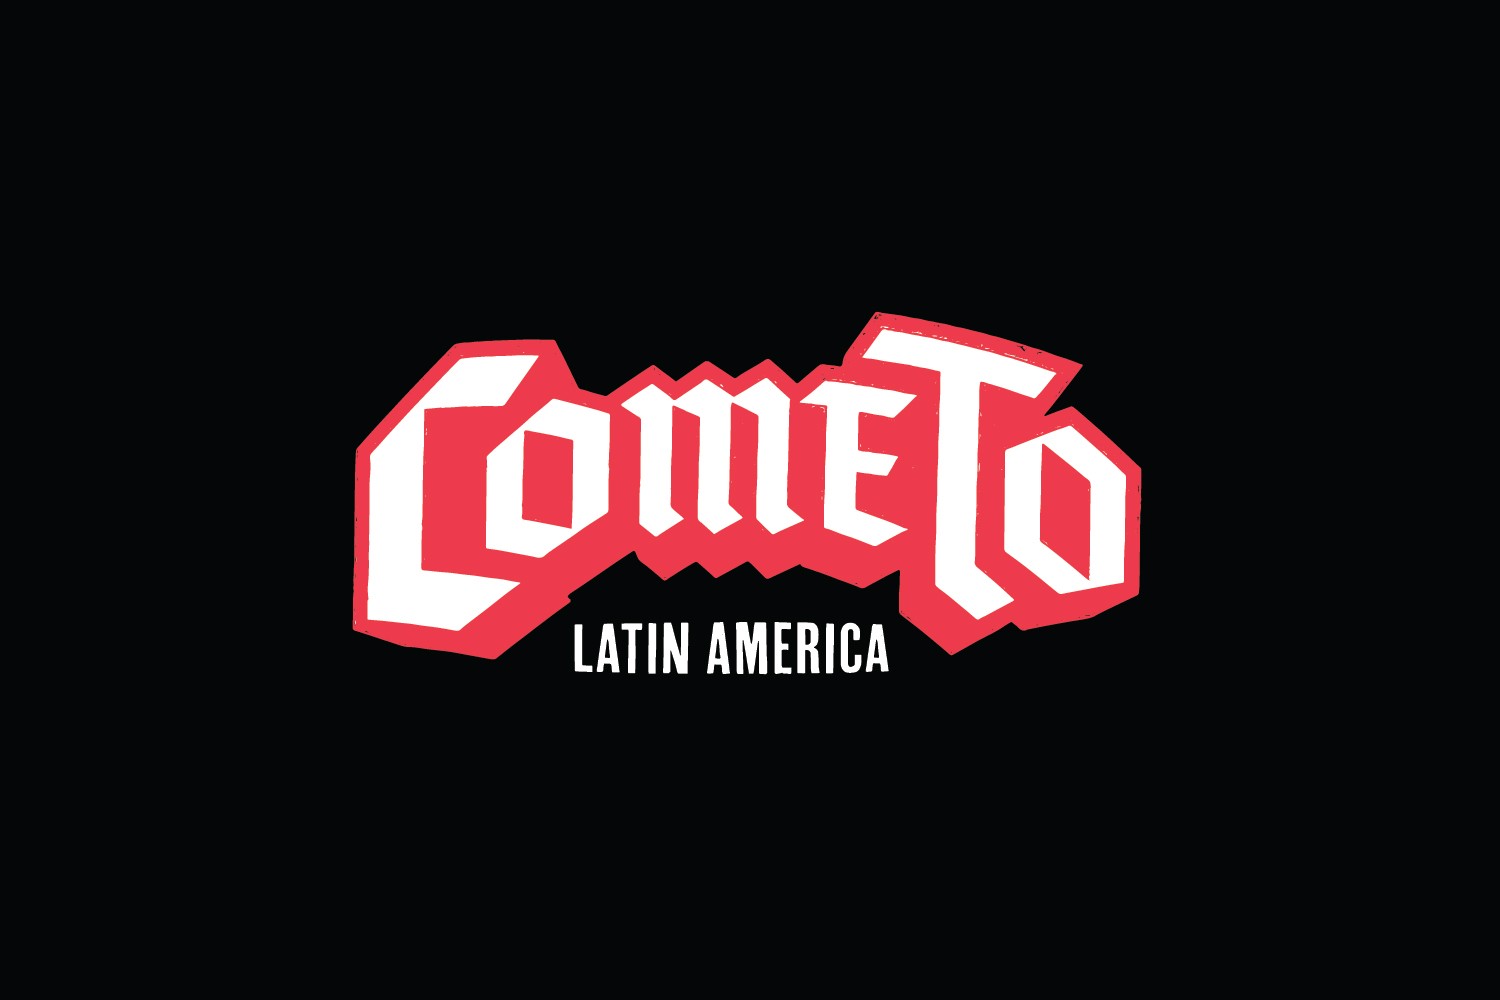 Logo da iniciativa Come To Latin America.